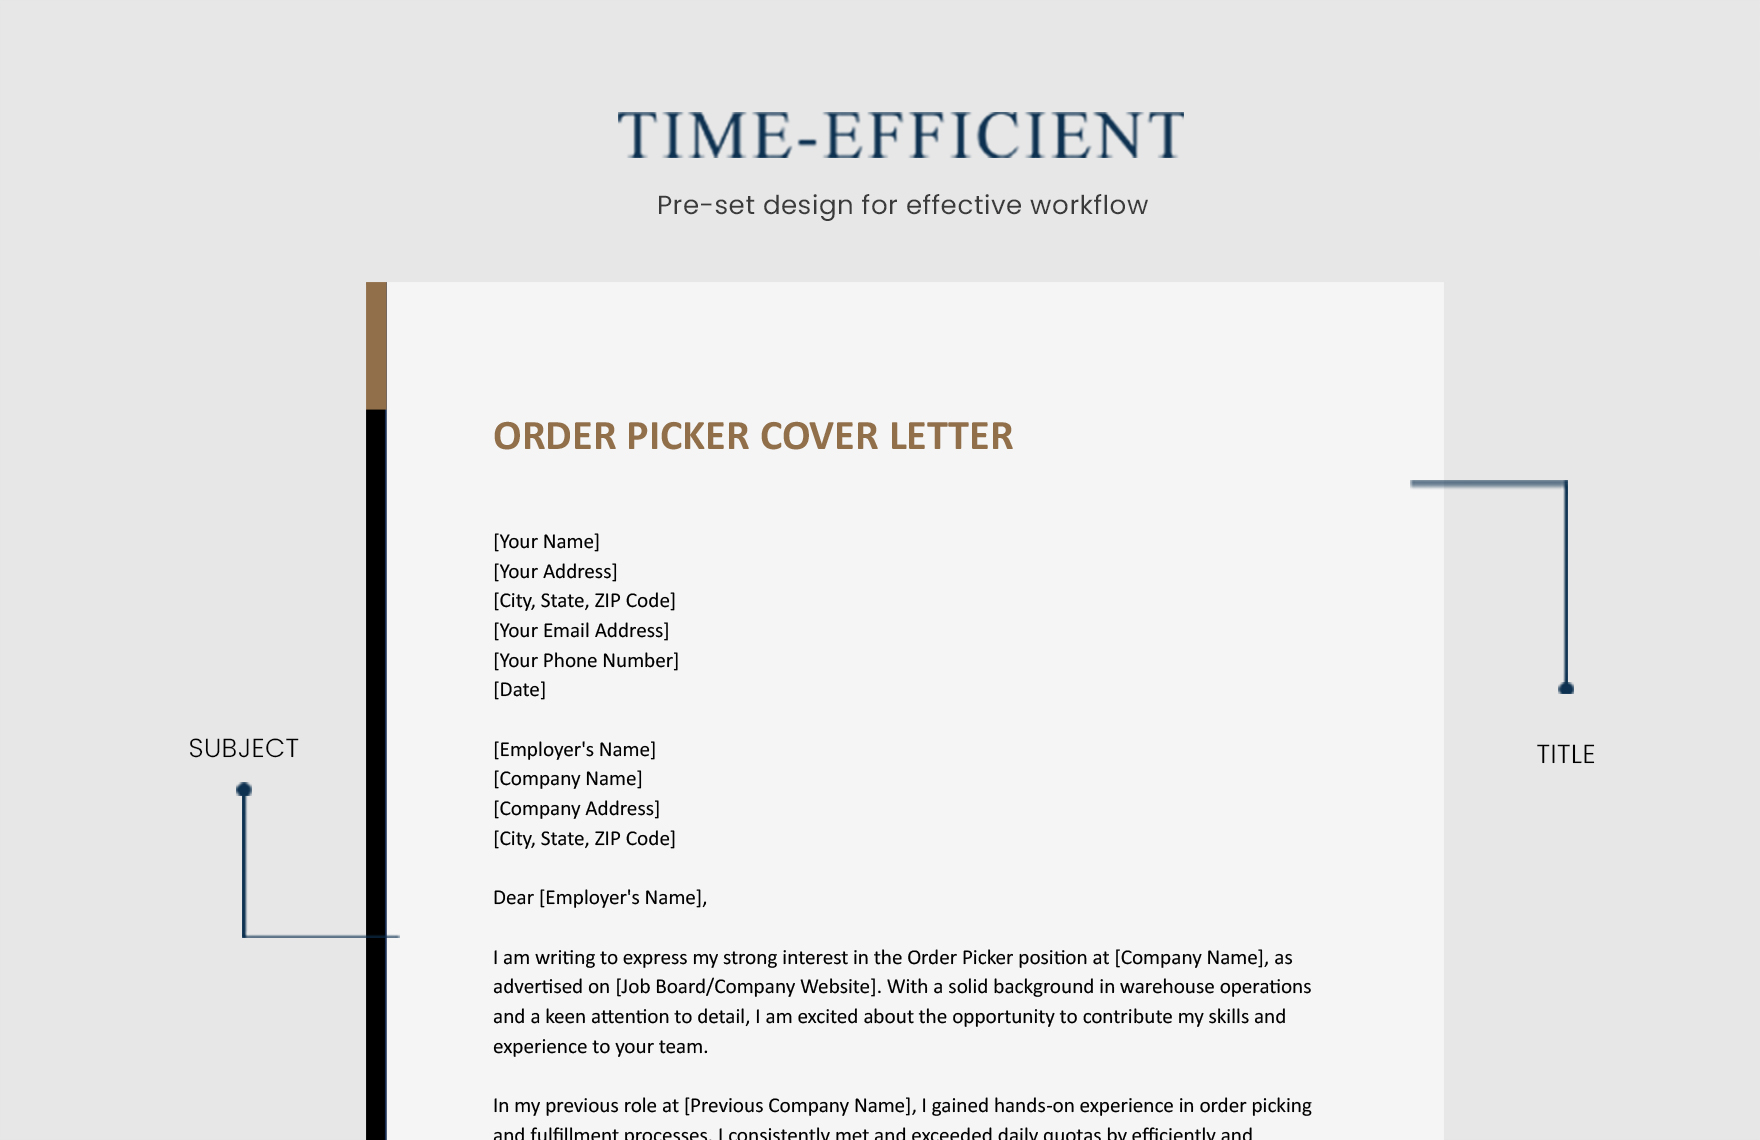 Order Picker Cover Letter